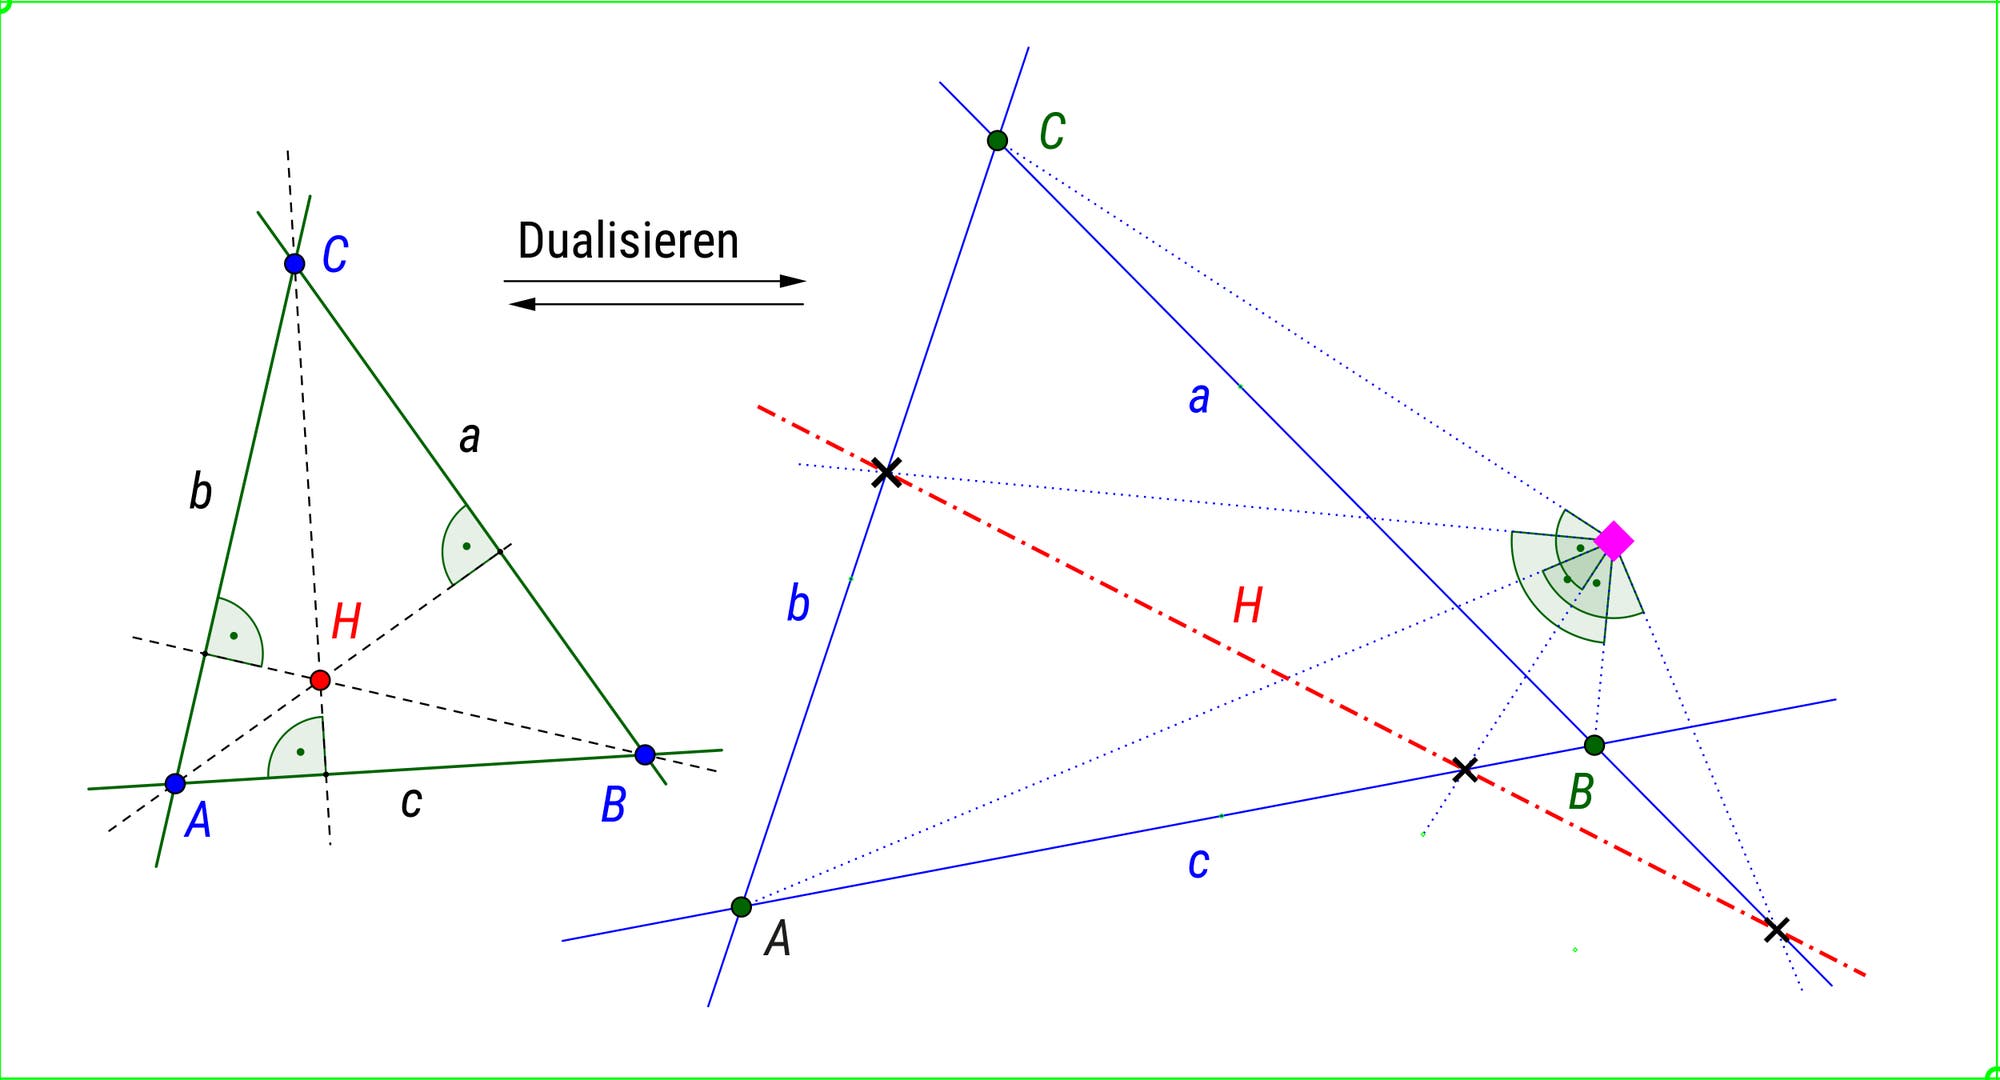 Geometría polar euclidiana: una perspectiva poco conocida